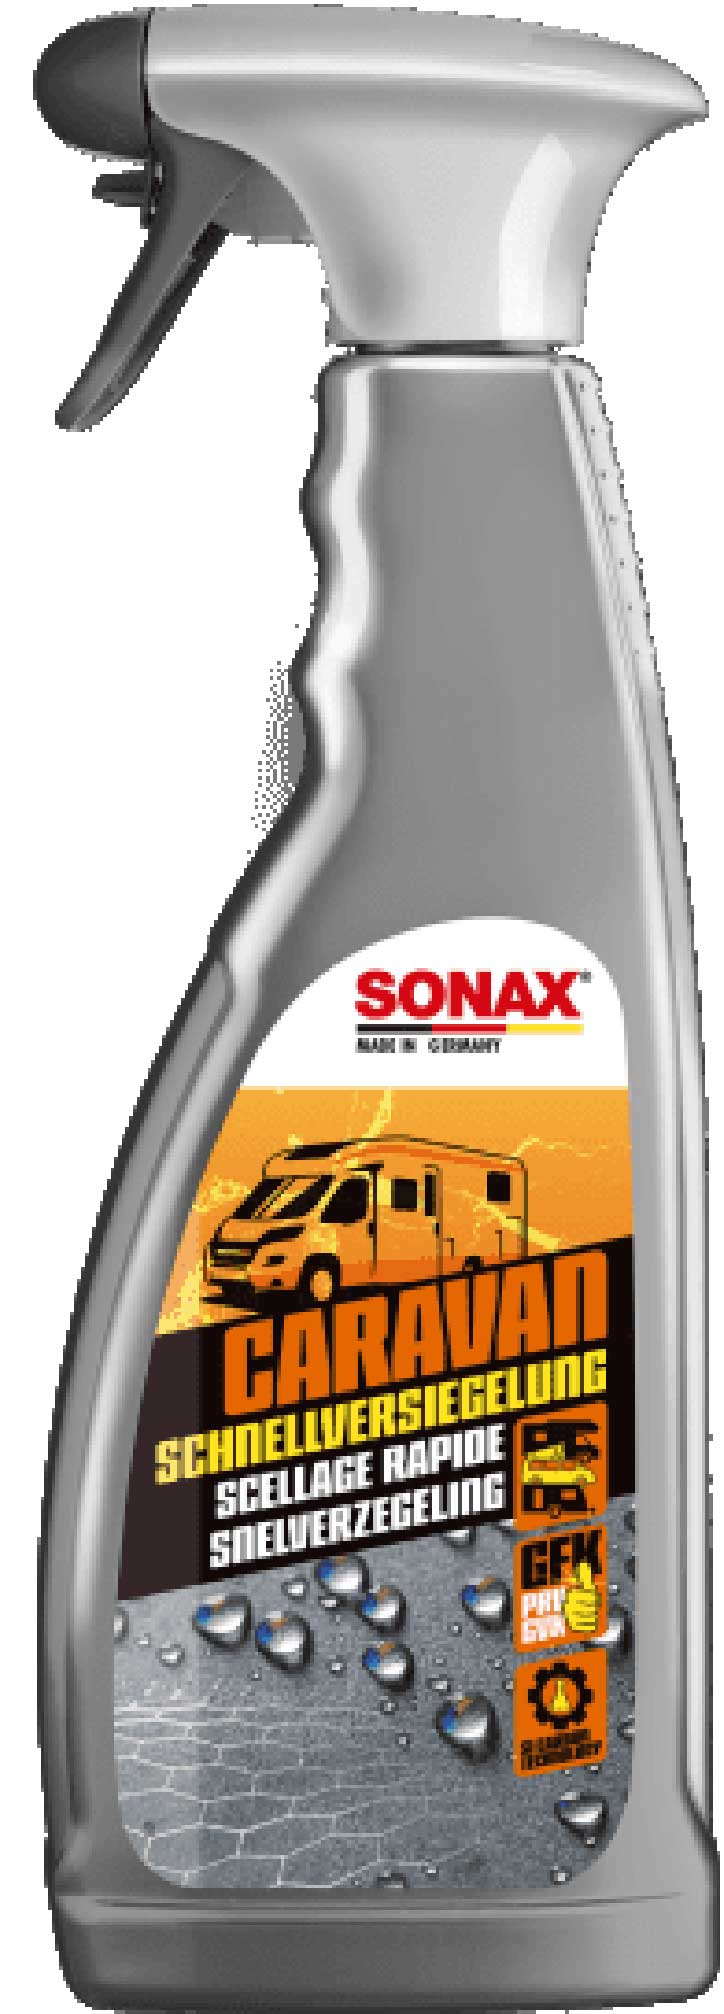 SONAX Caravan SchnellVersiegelung 750ml 07574000